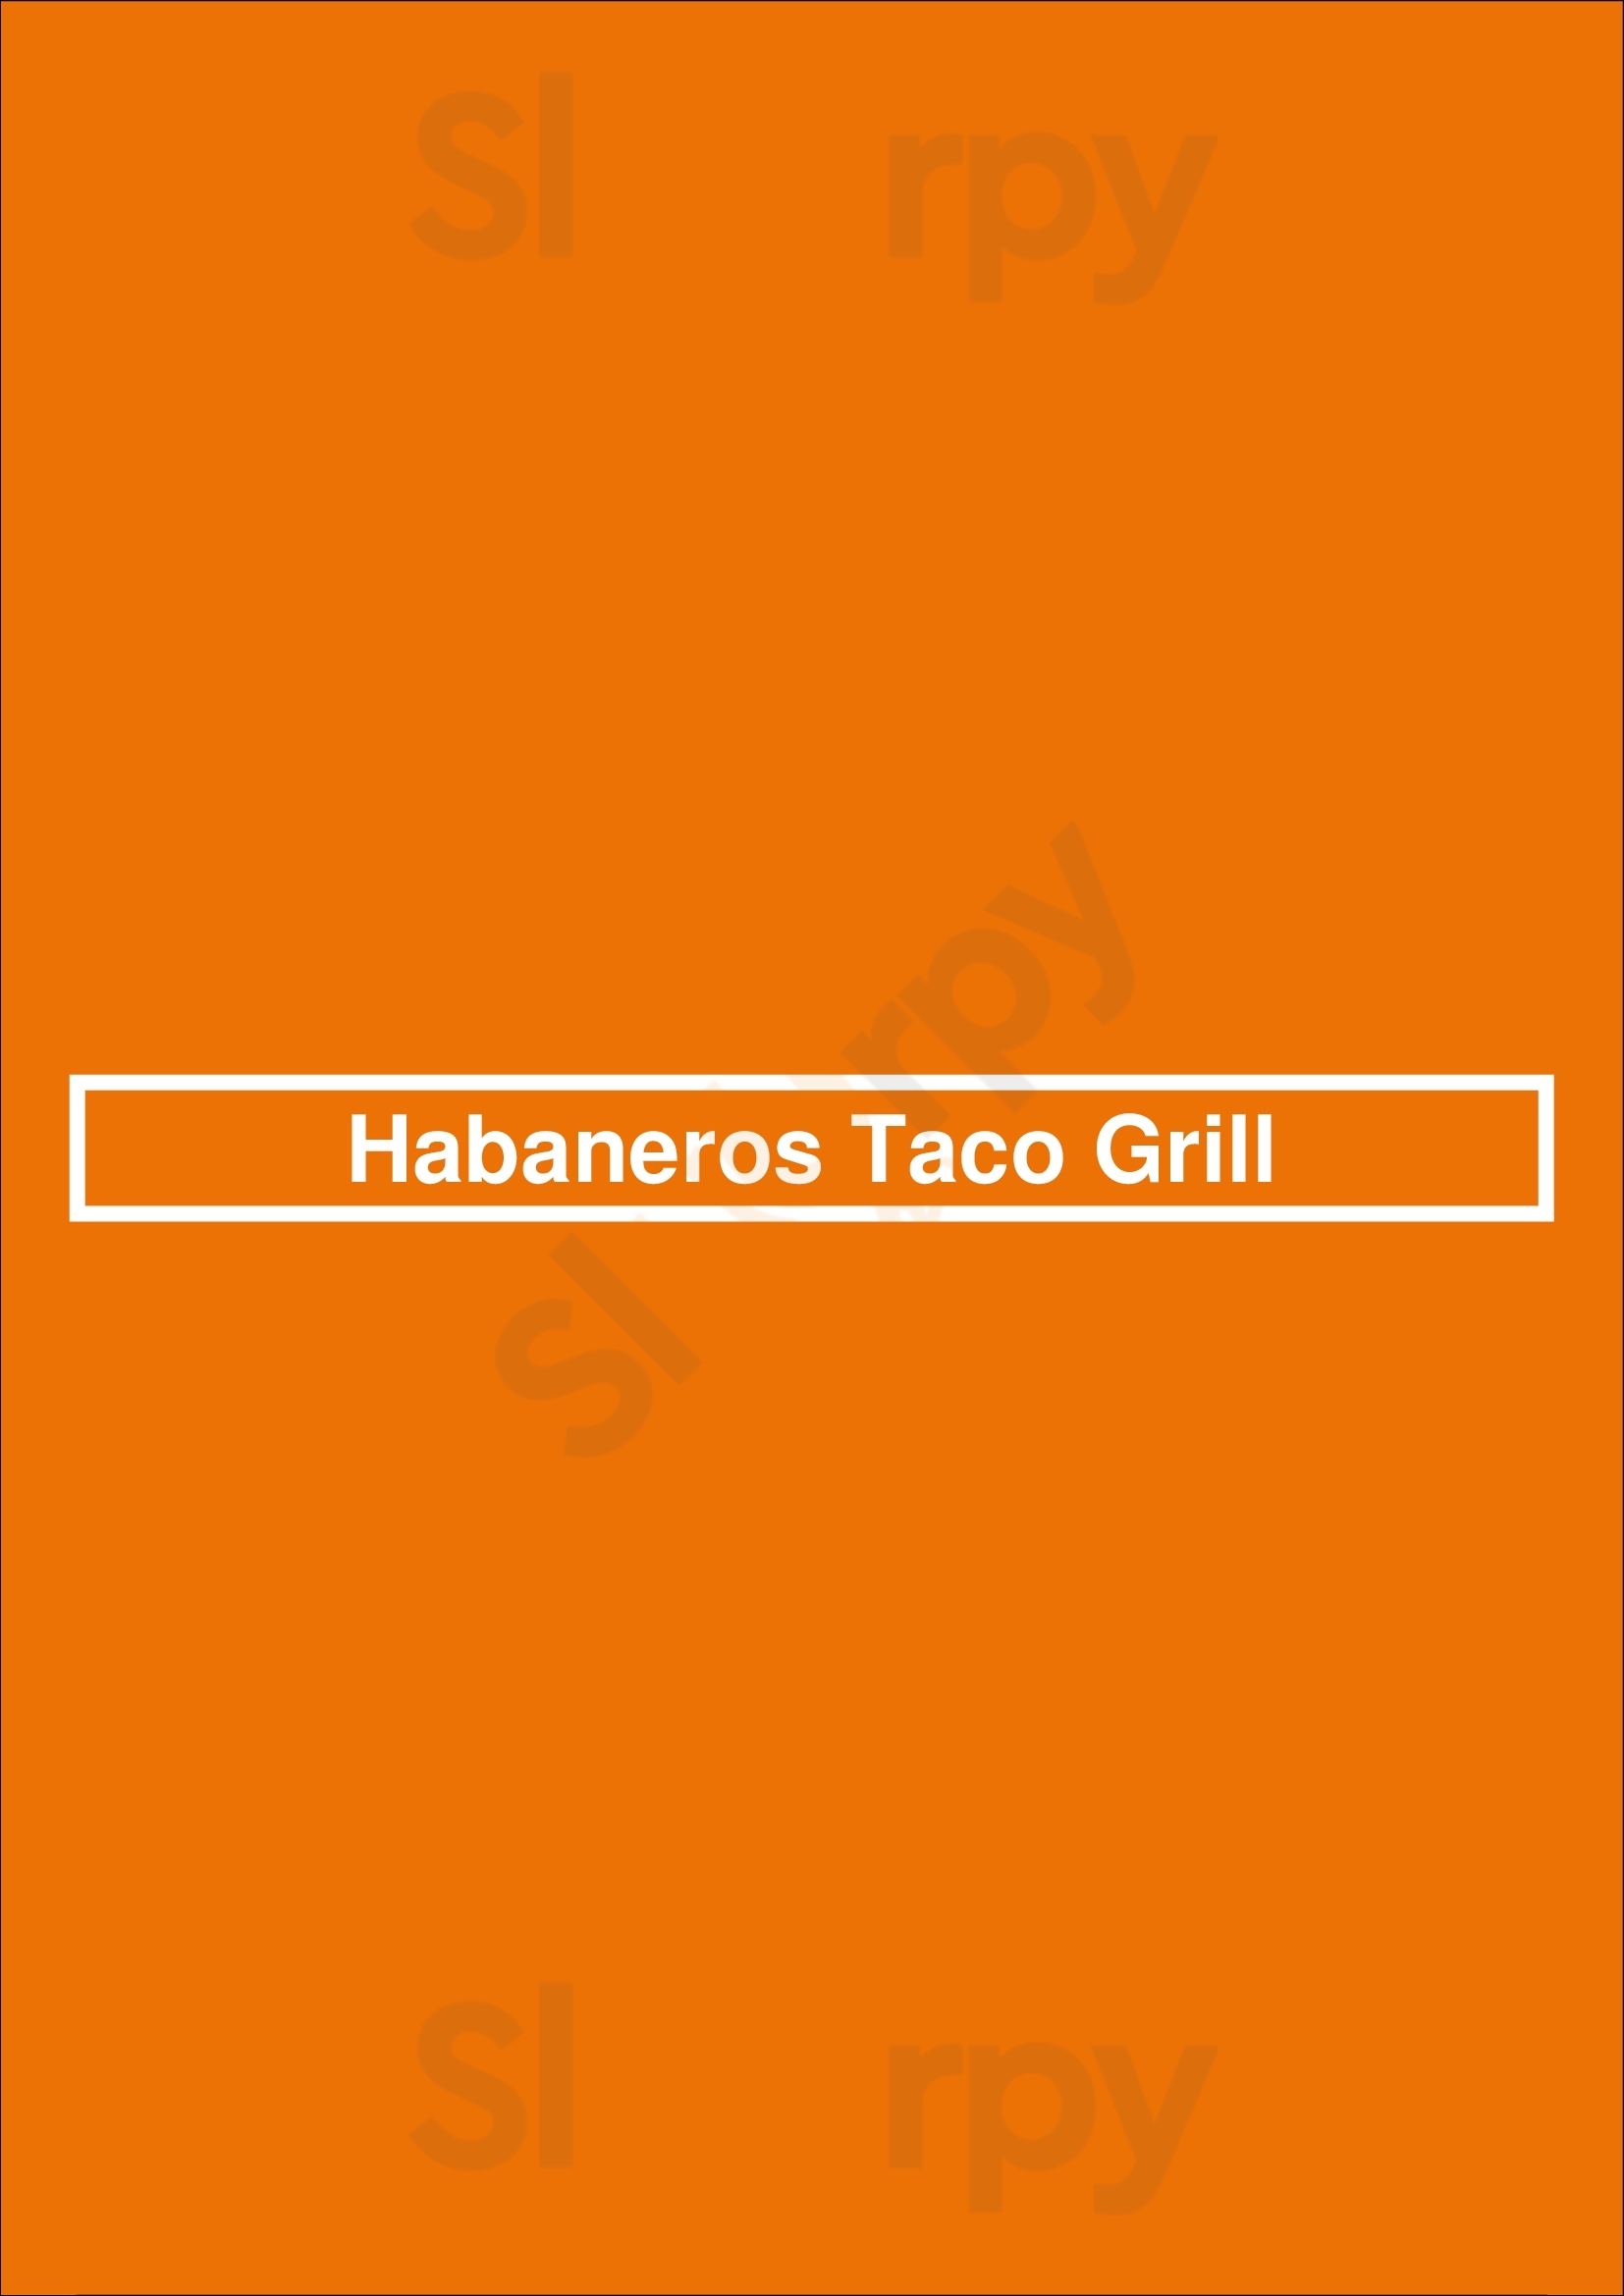 Habaneros Taco Grill Las Vegas Menu - 1